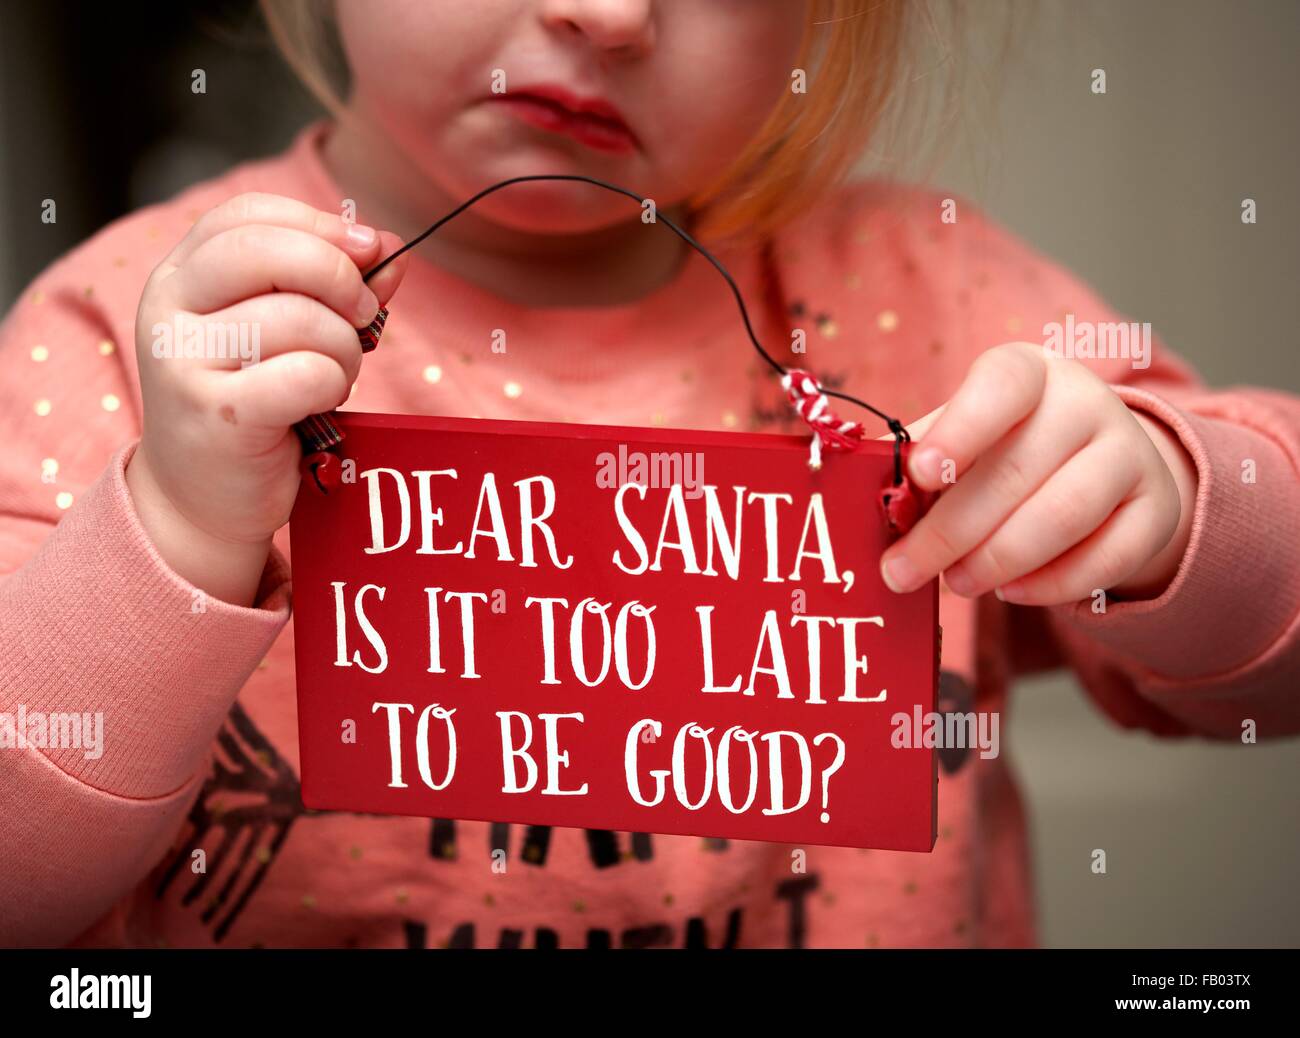 Ein 3-jähriges Mädchen mit einem traurigen Gesicht hält eine Plakette mit der Nachricht lieber Weihnachtsmann ist es zu spät, gut zu sein? Stockfoto